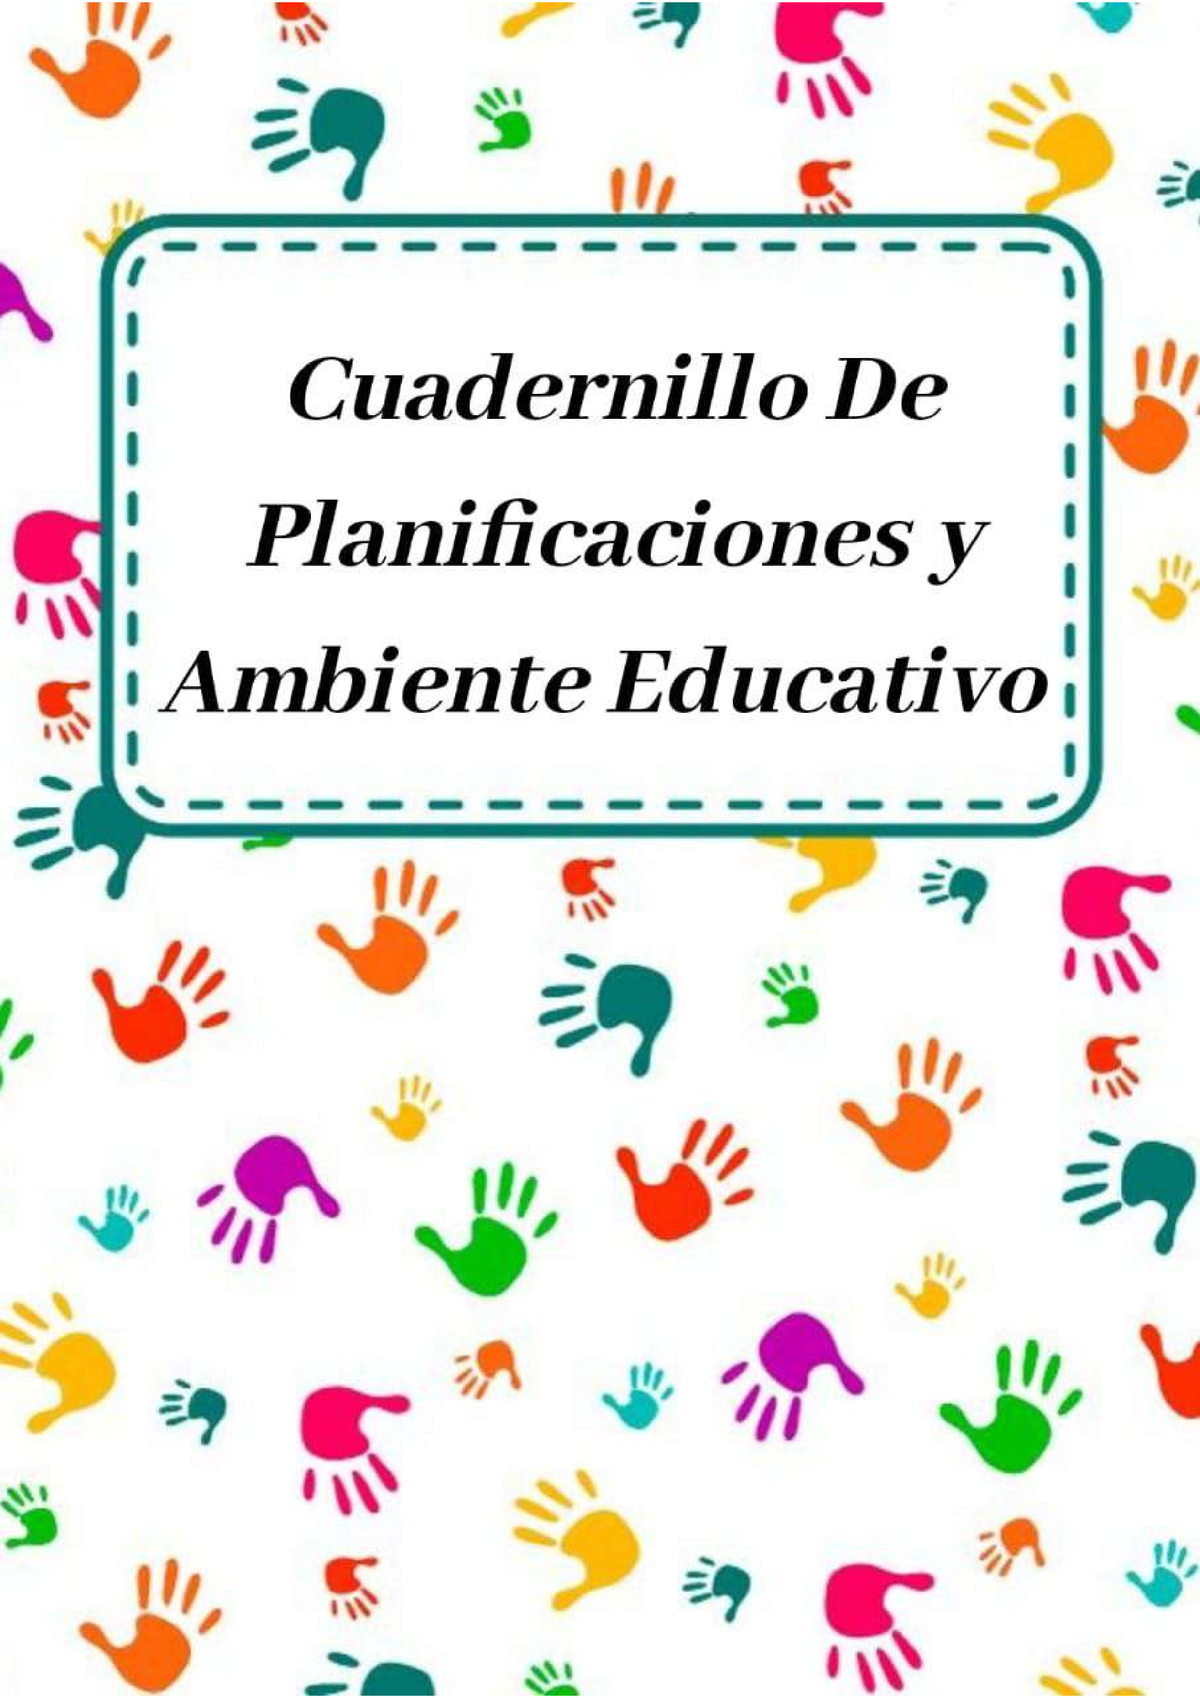 Cuadernillo De Planificaciones Y Ambientes Educativos Taller De Expresión Oral Y Corporal 8348